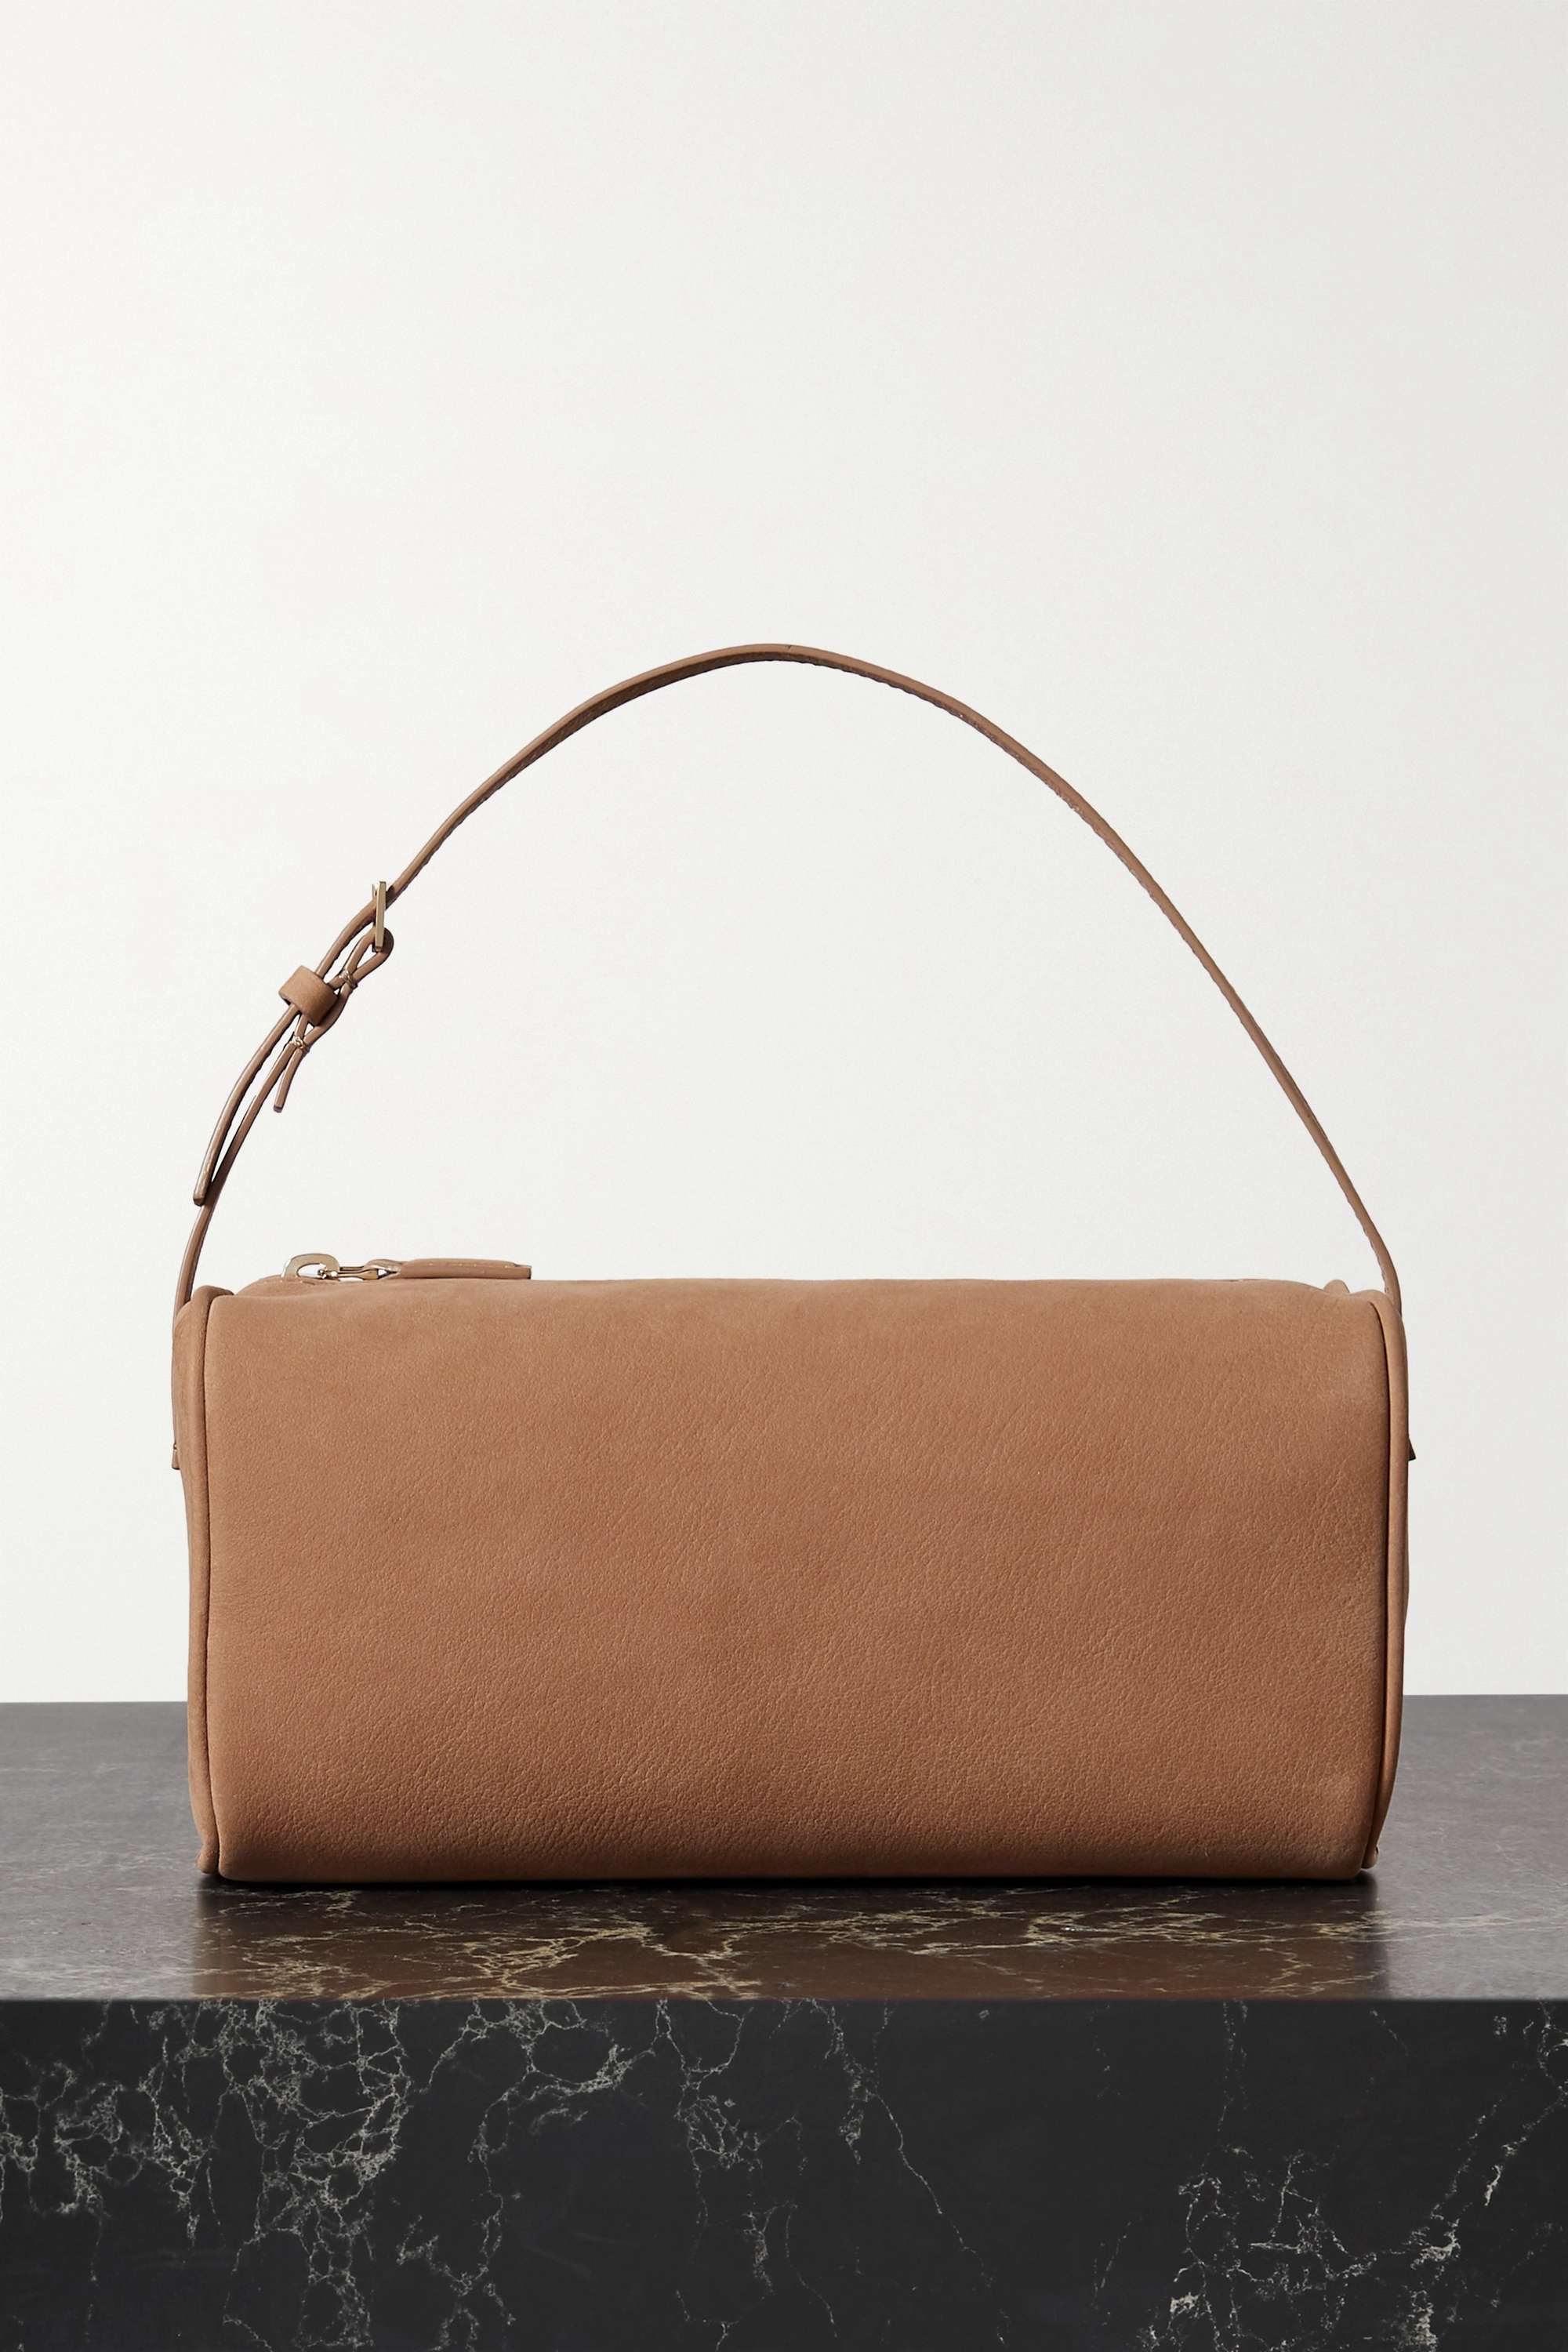 The best quiet luxury bags that epitomise subtle sophistication